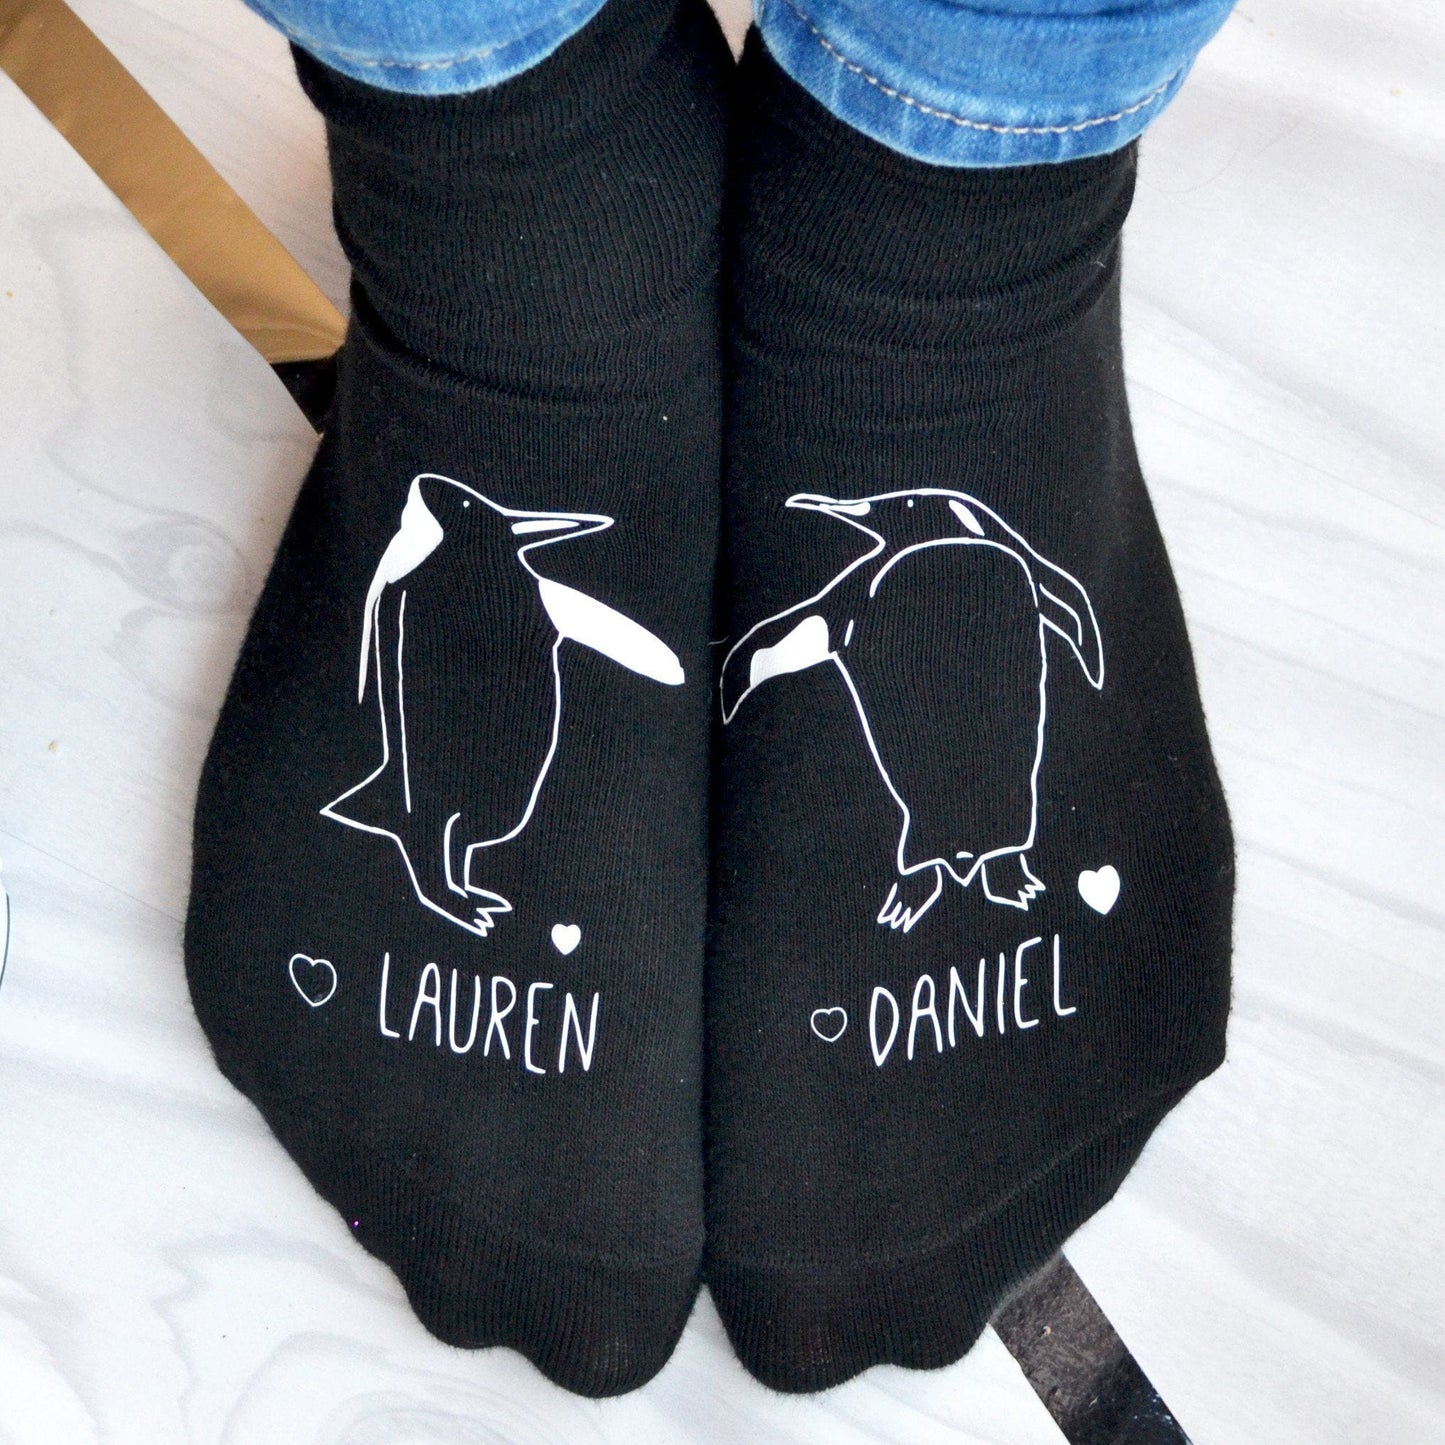 Personalised Gift Socks - Penguins In Love, socks, - ALPHS 